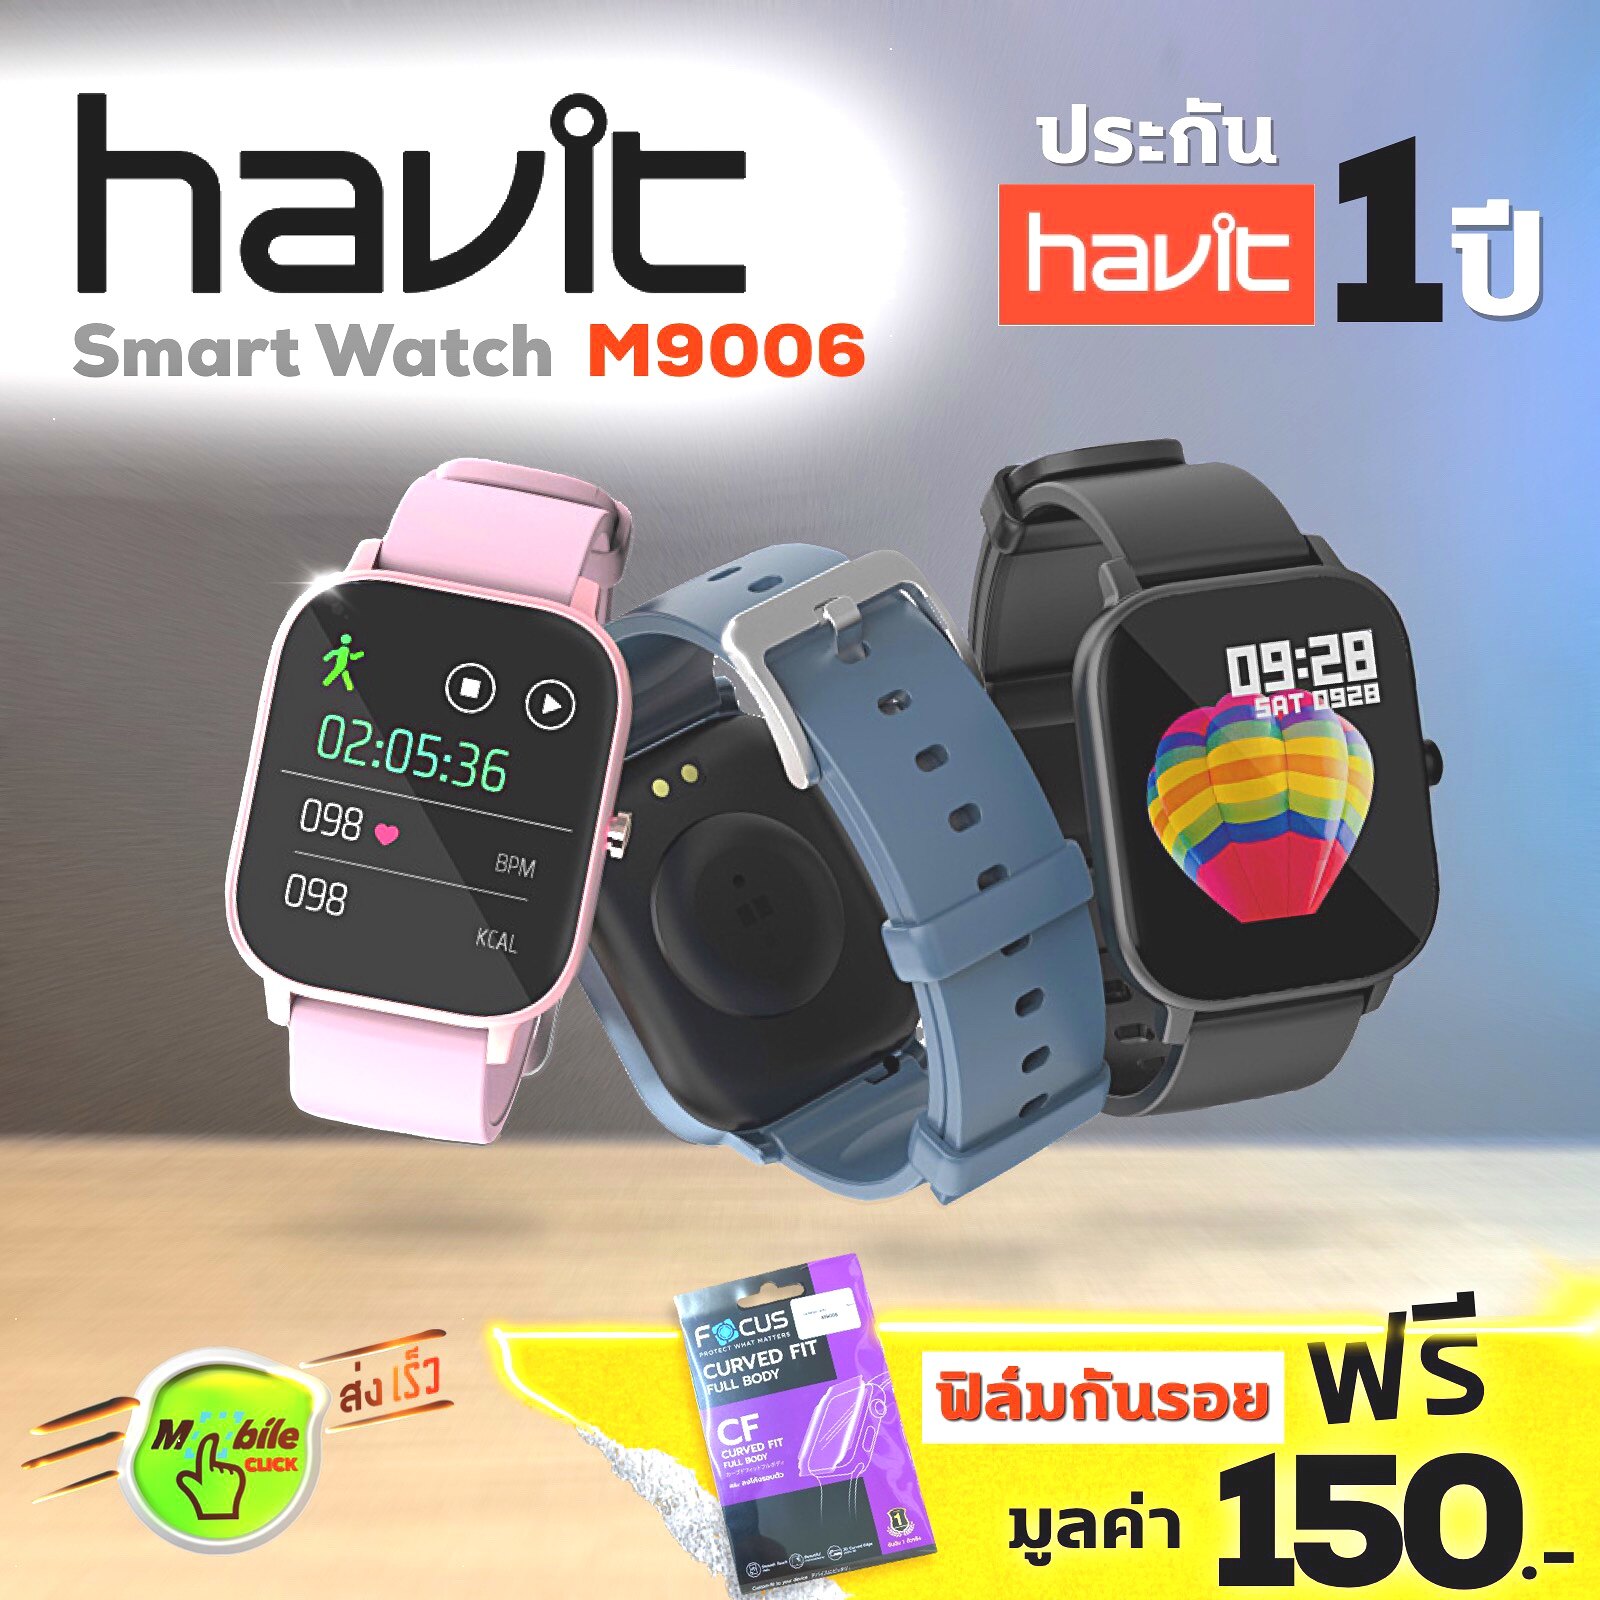 í ½í´¥à¹à¸à¸¡à¸à¸´à¸¥à¹à¸¡-Havit Watch M9006-Smart Watch à¸à¸±à¸à¸à¹à¸³-à¸à¸£à¸°à¸à¸±à¸à¸¨à¸¹à¸à¸¢à¹ 1à¸à¸µ à¸®à¸²à¸§à¸´à¸